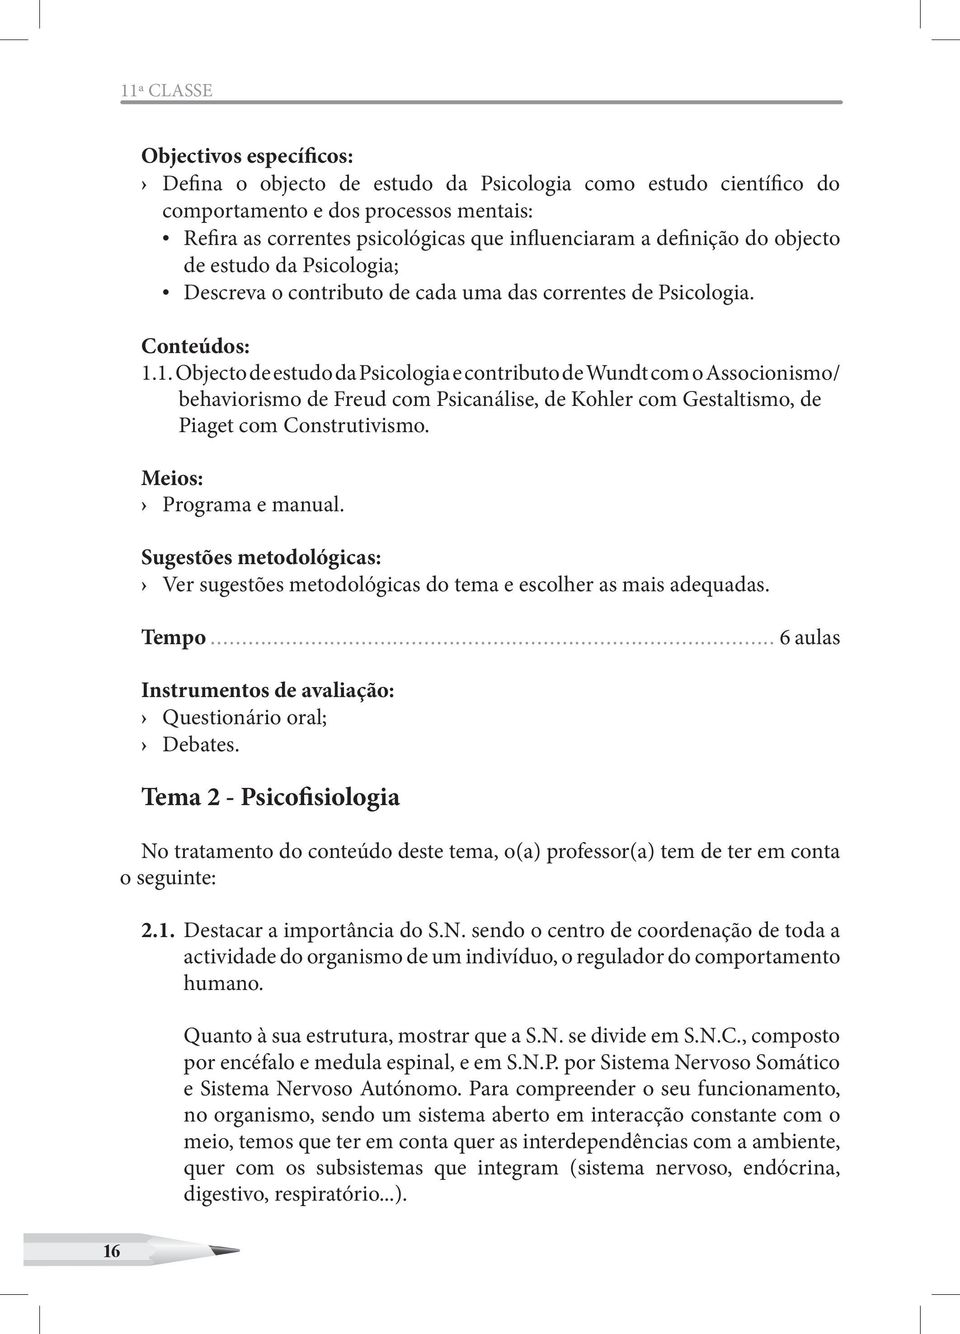 1. Objecto de estudo da Psicologia e contributo de Wundt com o Associonismo/ behaviorismo de Freud com Psicanálise, de Kohler com Gestaltismo, de Piaget com Construtivismo. Meios: Programa e manual.